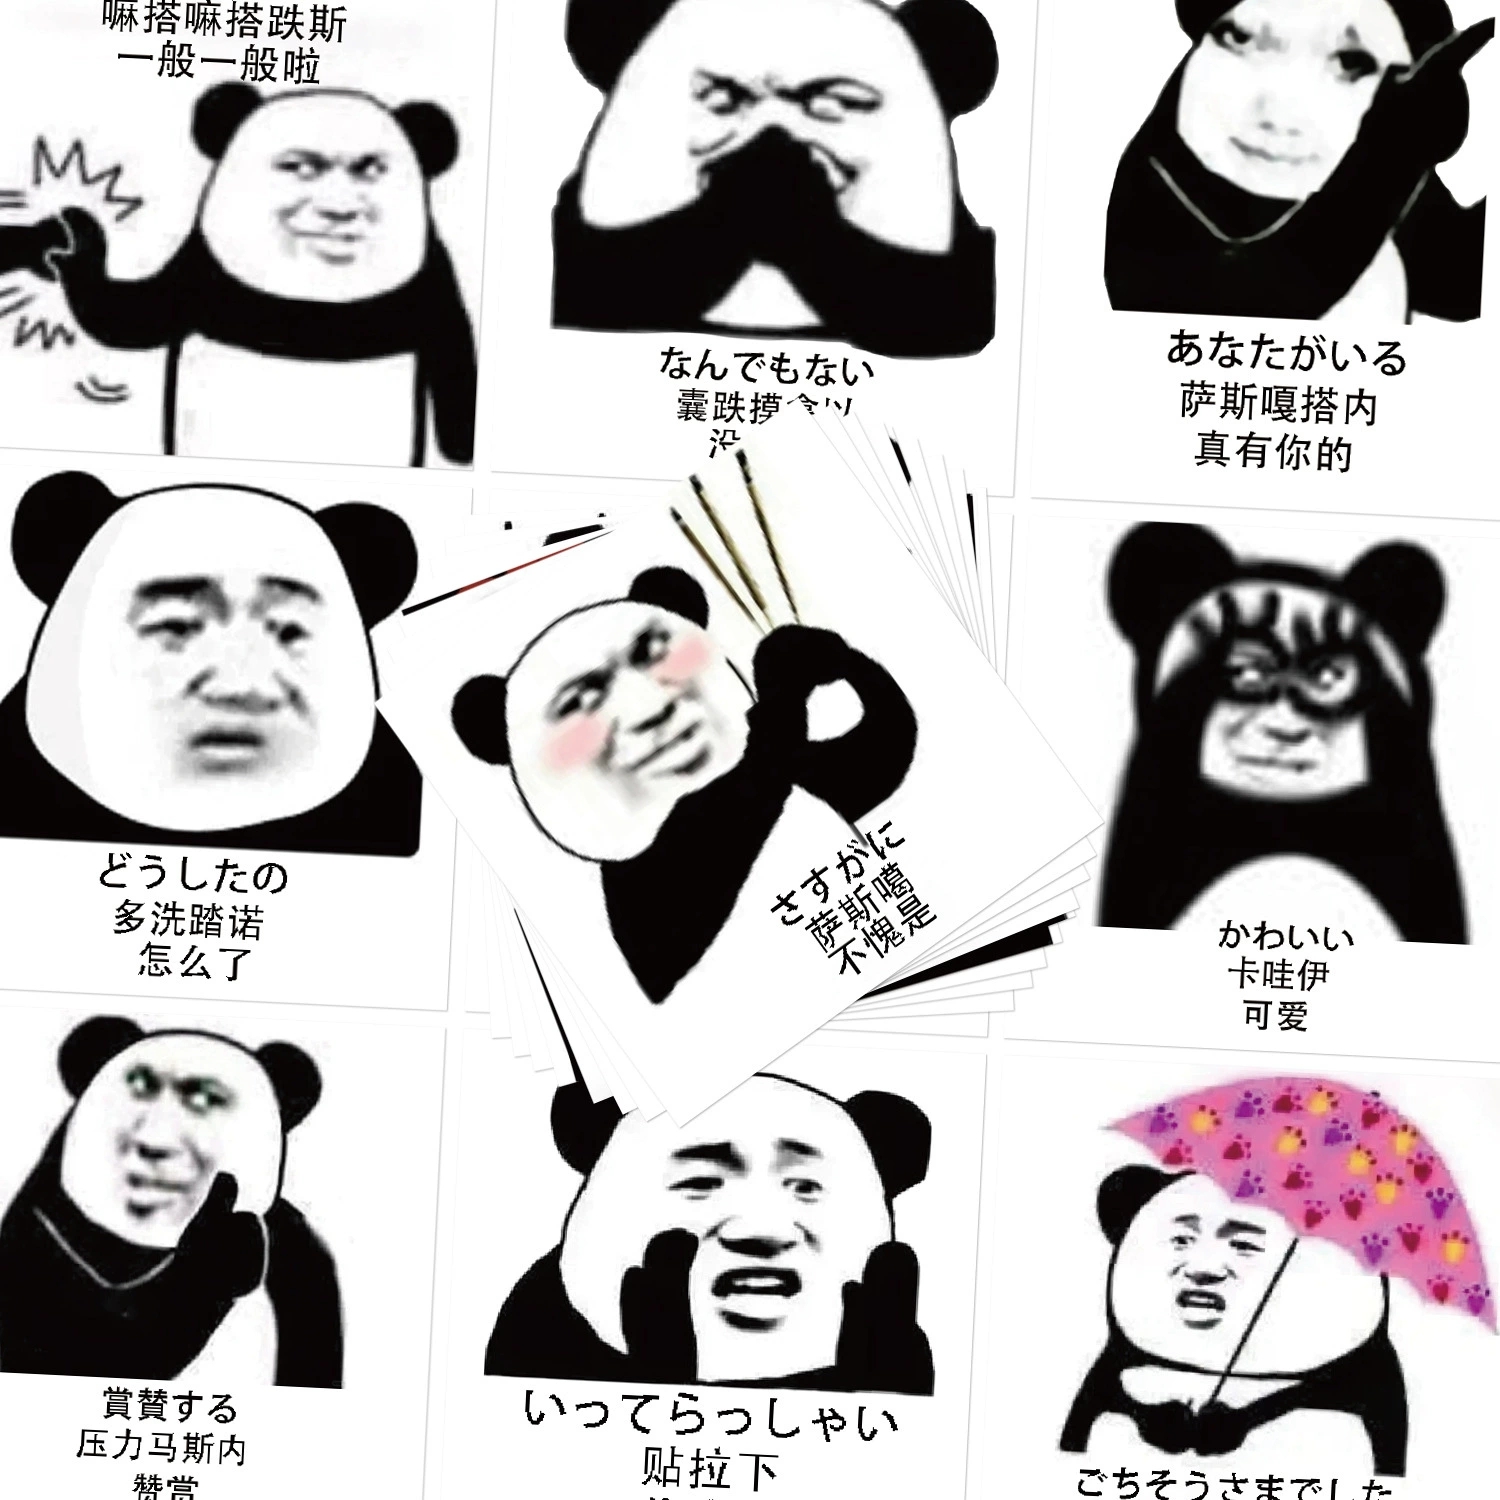 熊猫头表情包贴纸内涵恶搞素材贴画沙雕趣味谐音写日语单词防水贴